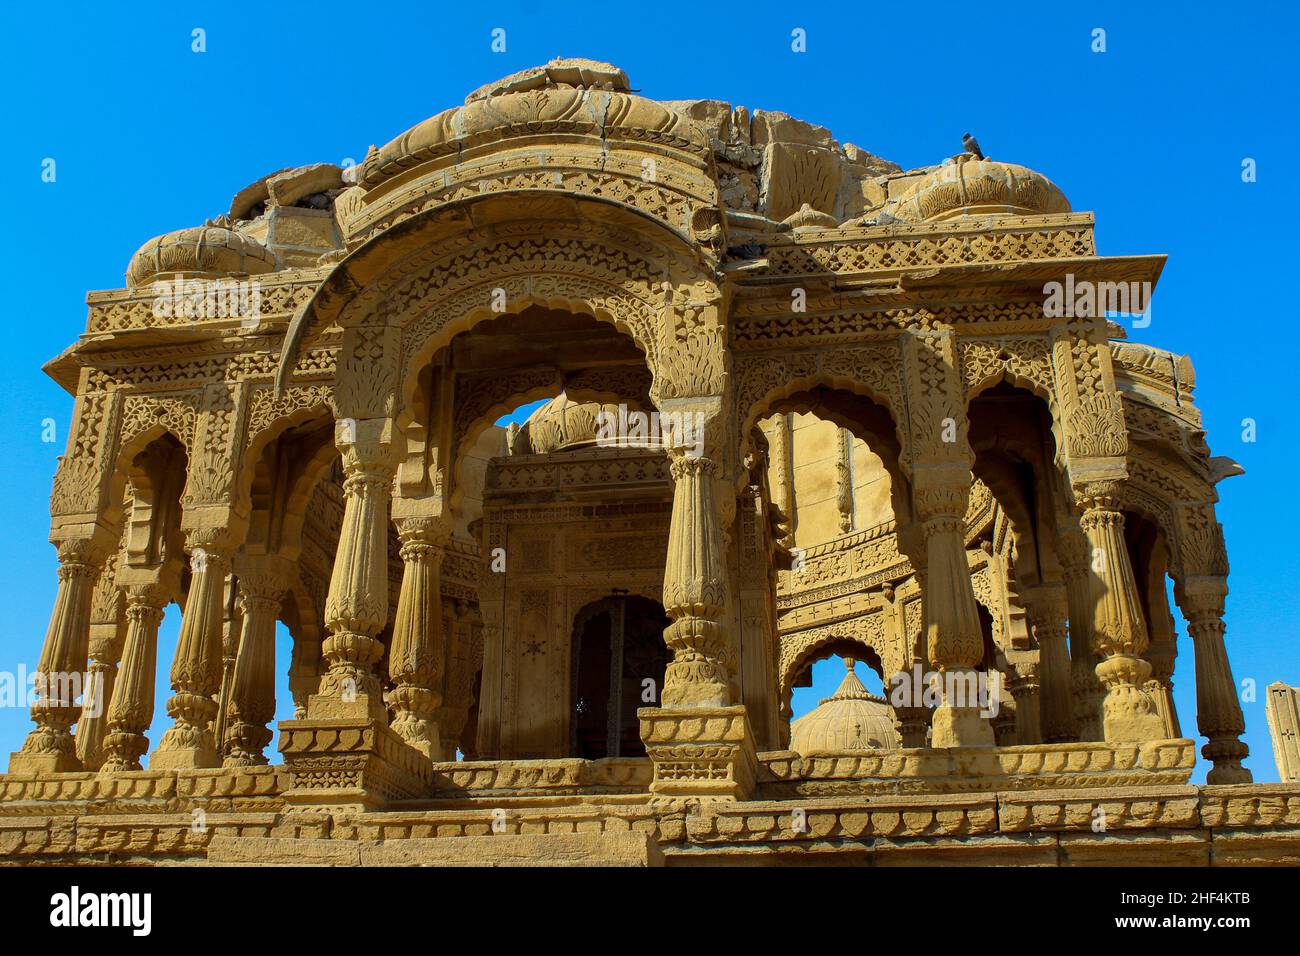 Rajasthan: Land of kings Stock Photo